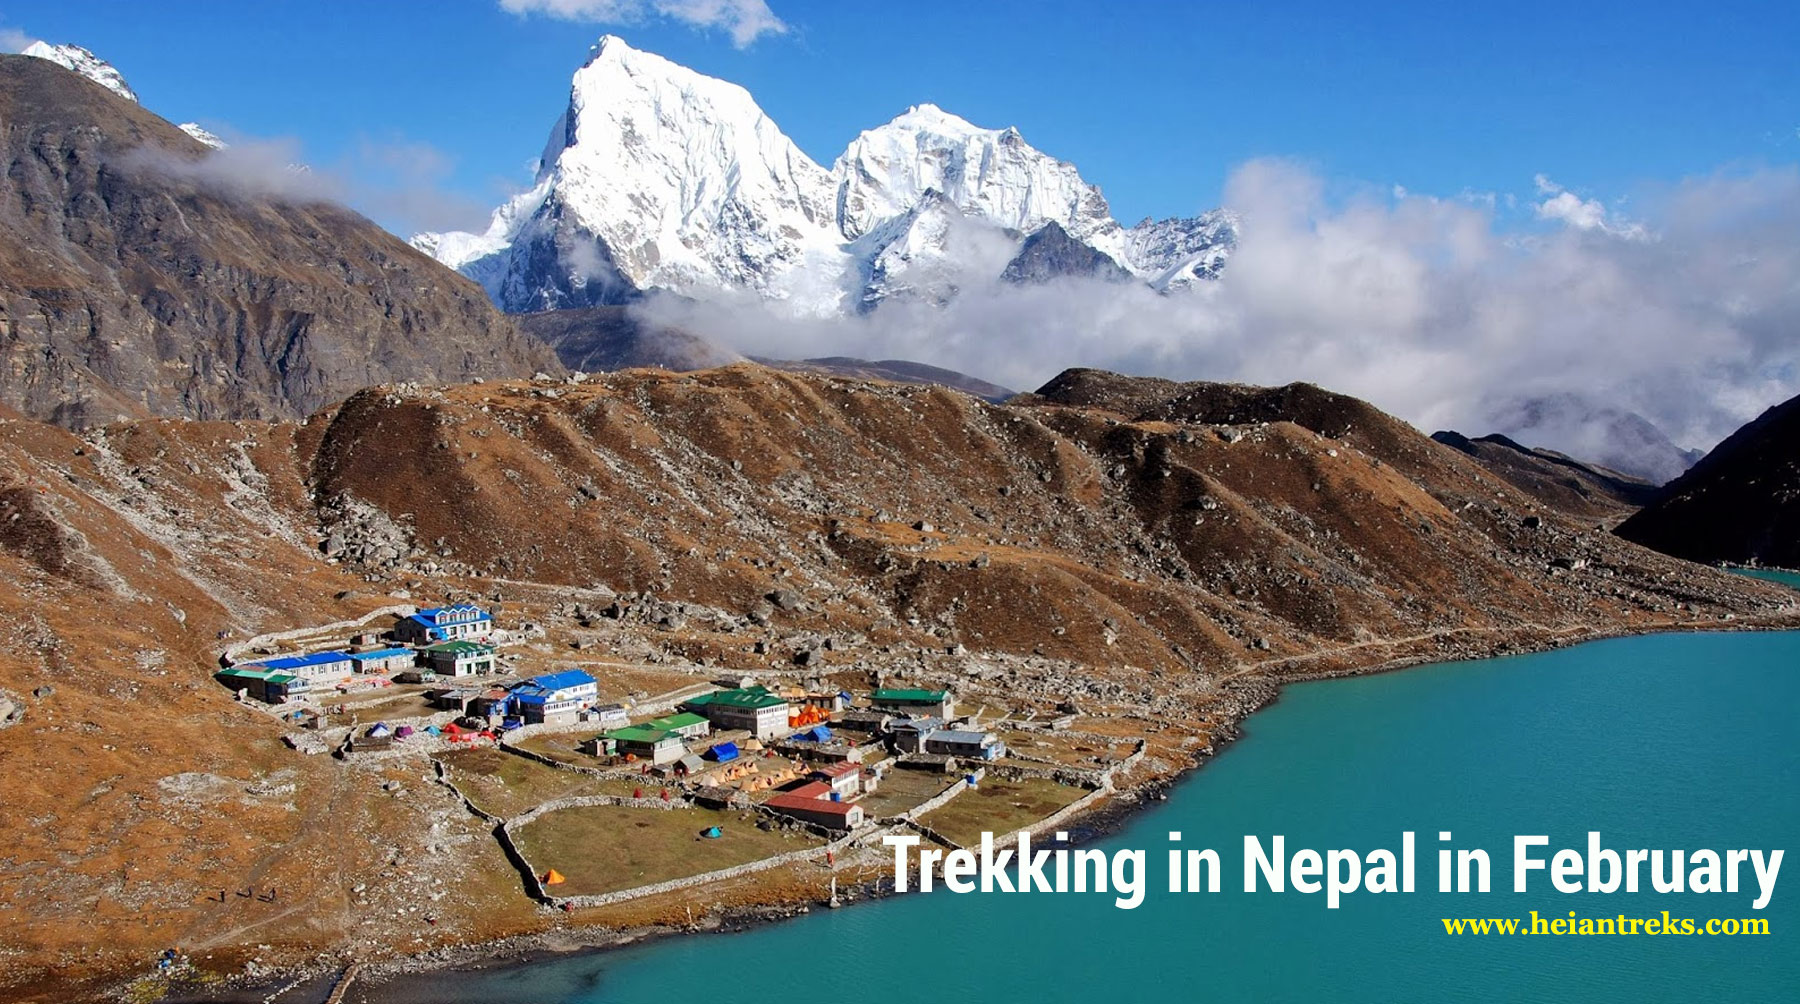 Trekking in Nepal in February